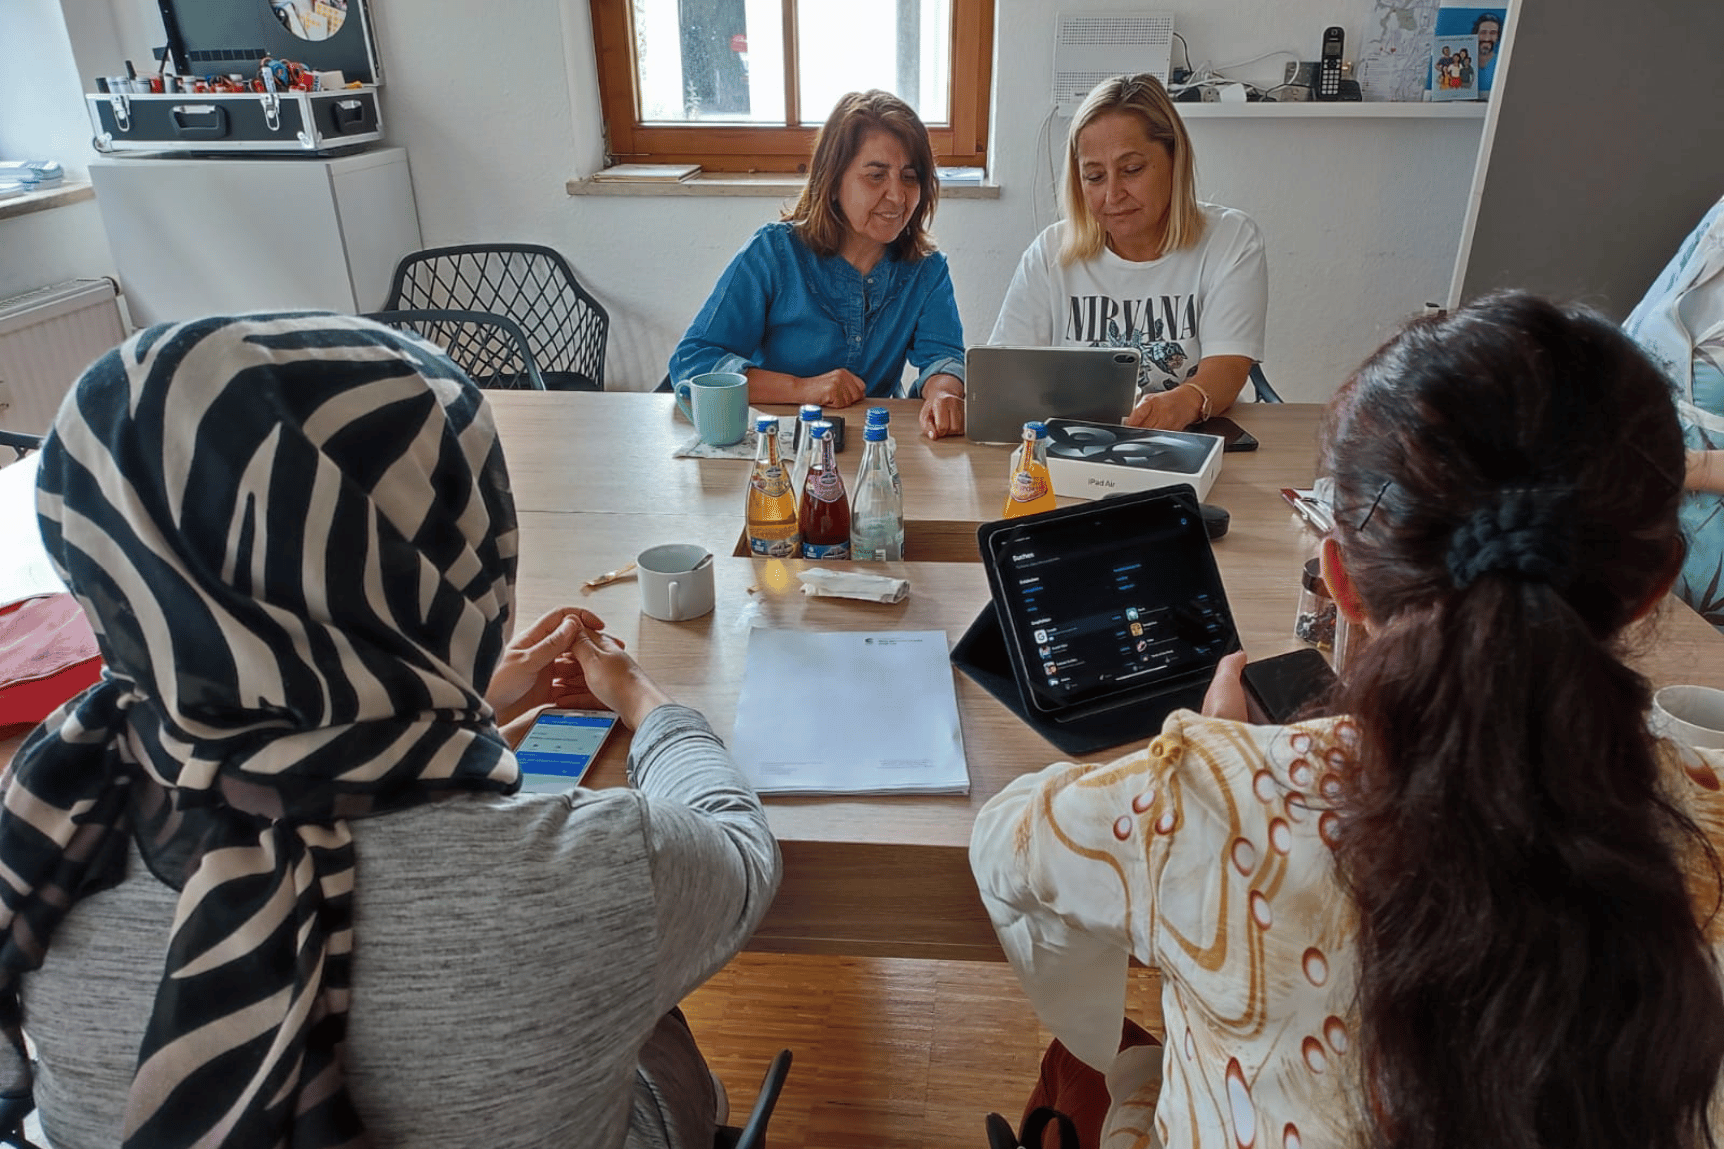 Eine Gruppe Frauen sitzt an einem Tisch und schaut sich zusammen die Bedienung eines Tablets an